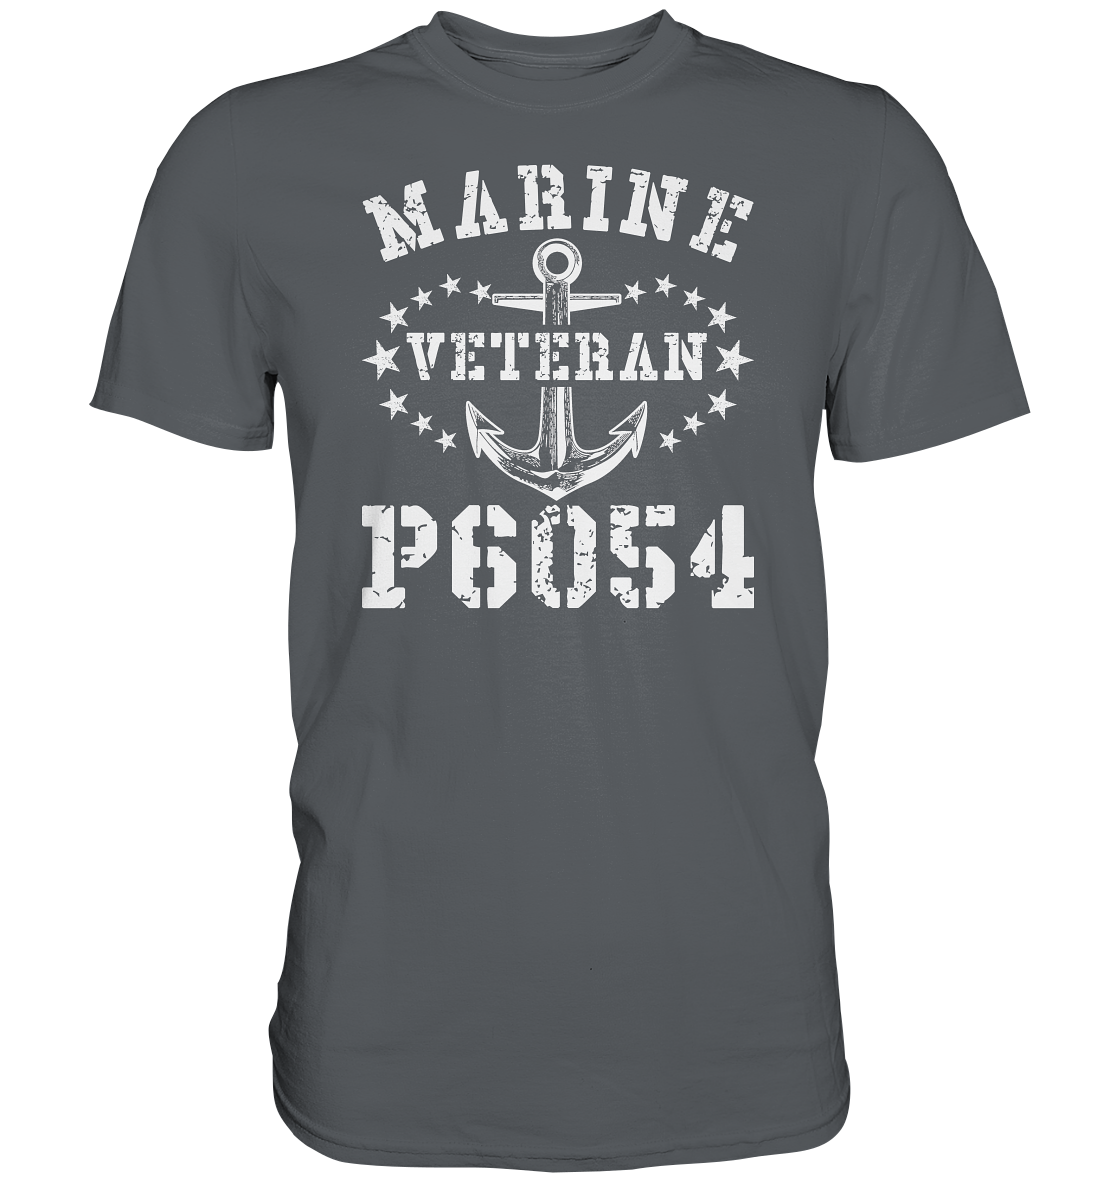 P6054 Veteran - Premium Shirt